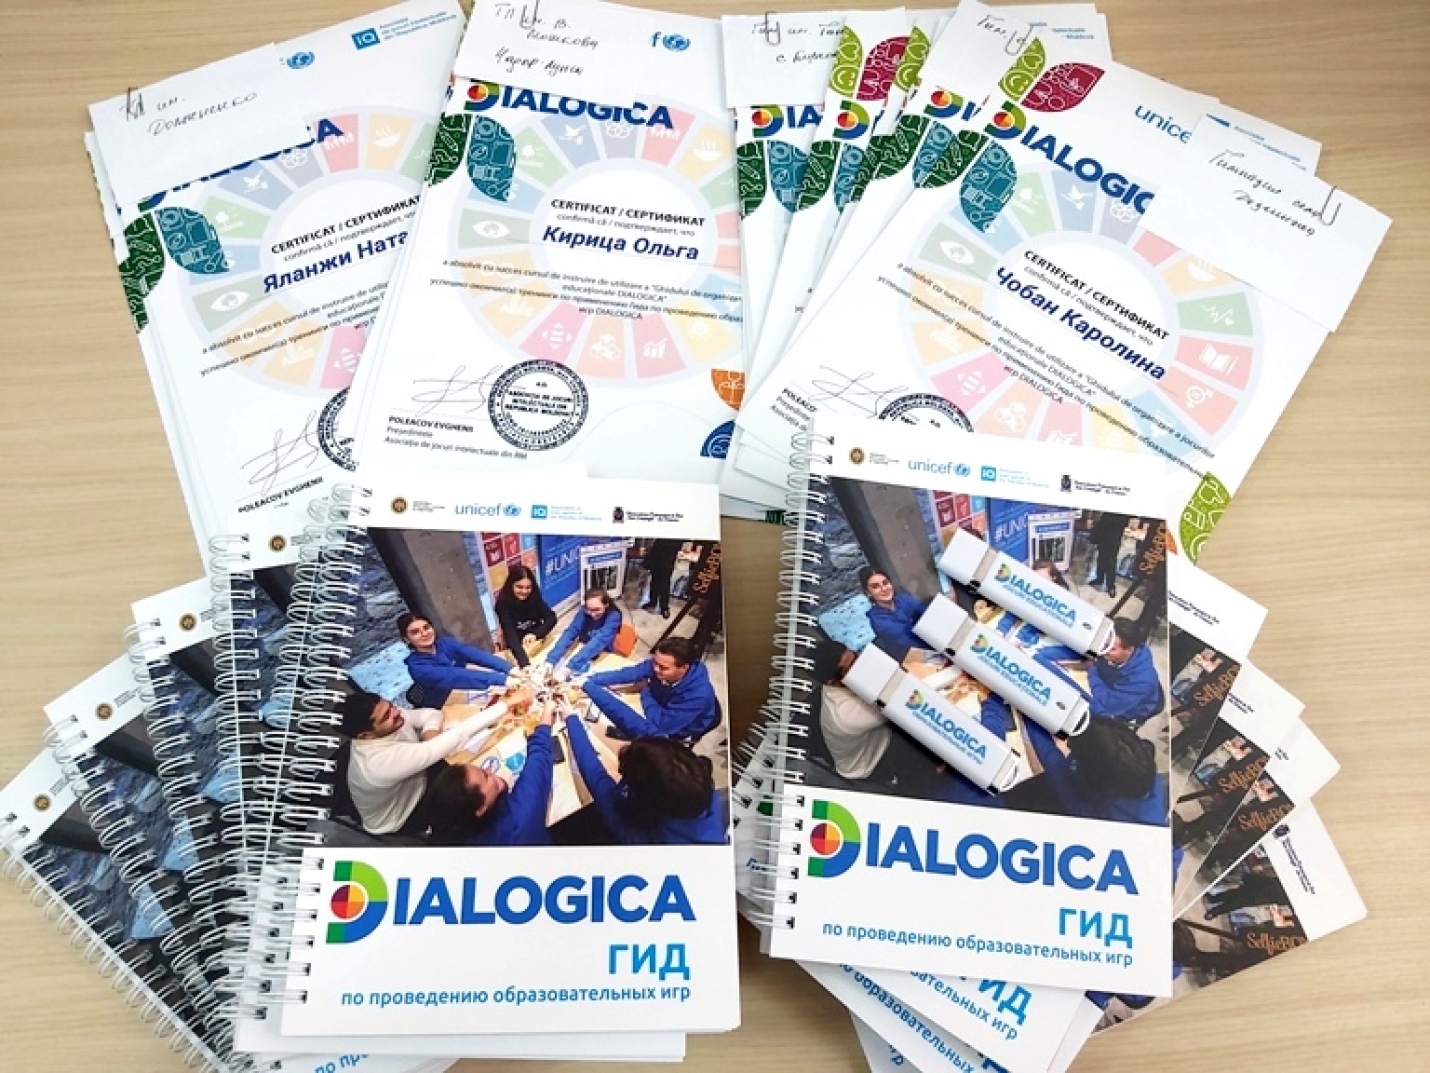 Образовательный проект DIALOGICA: учебные заведения Гагаузии получили в дар Гиды по проведению образовательных игр